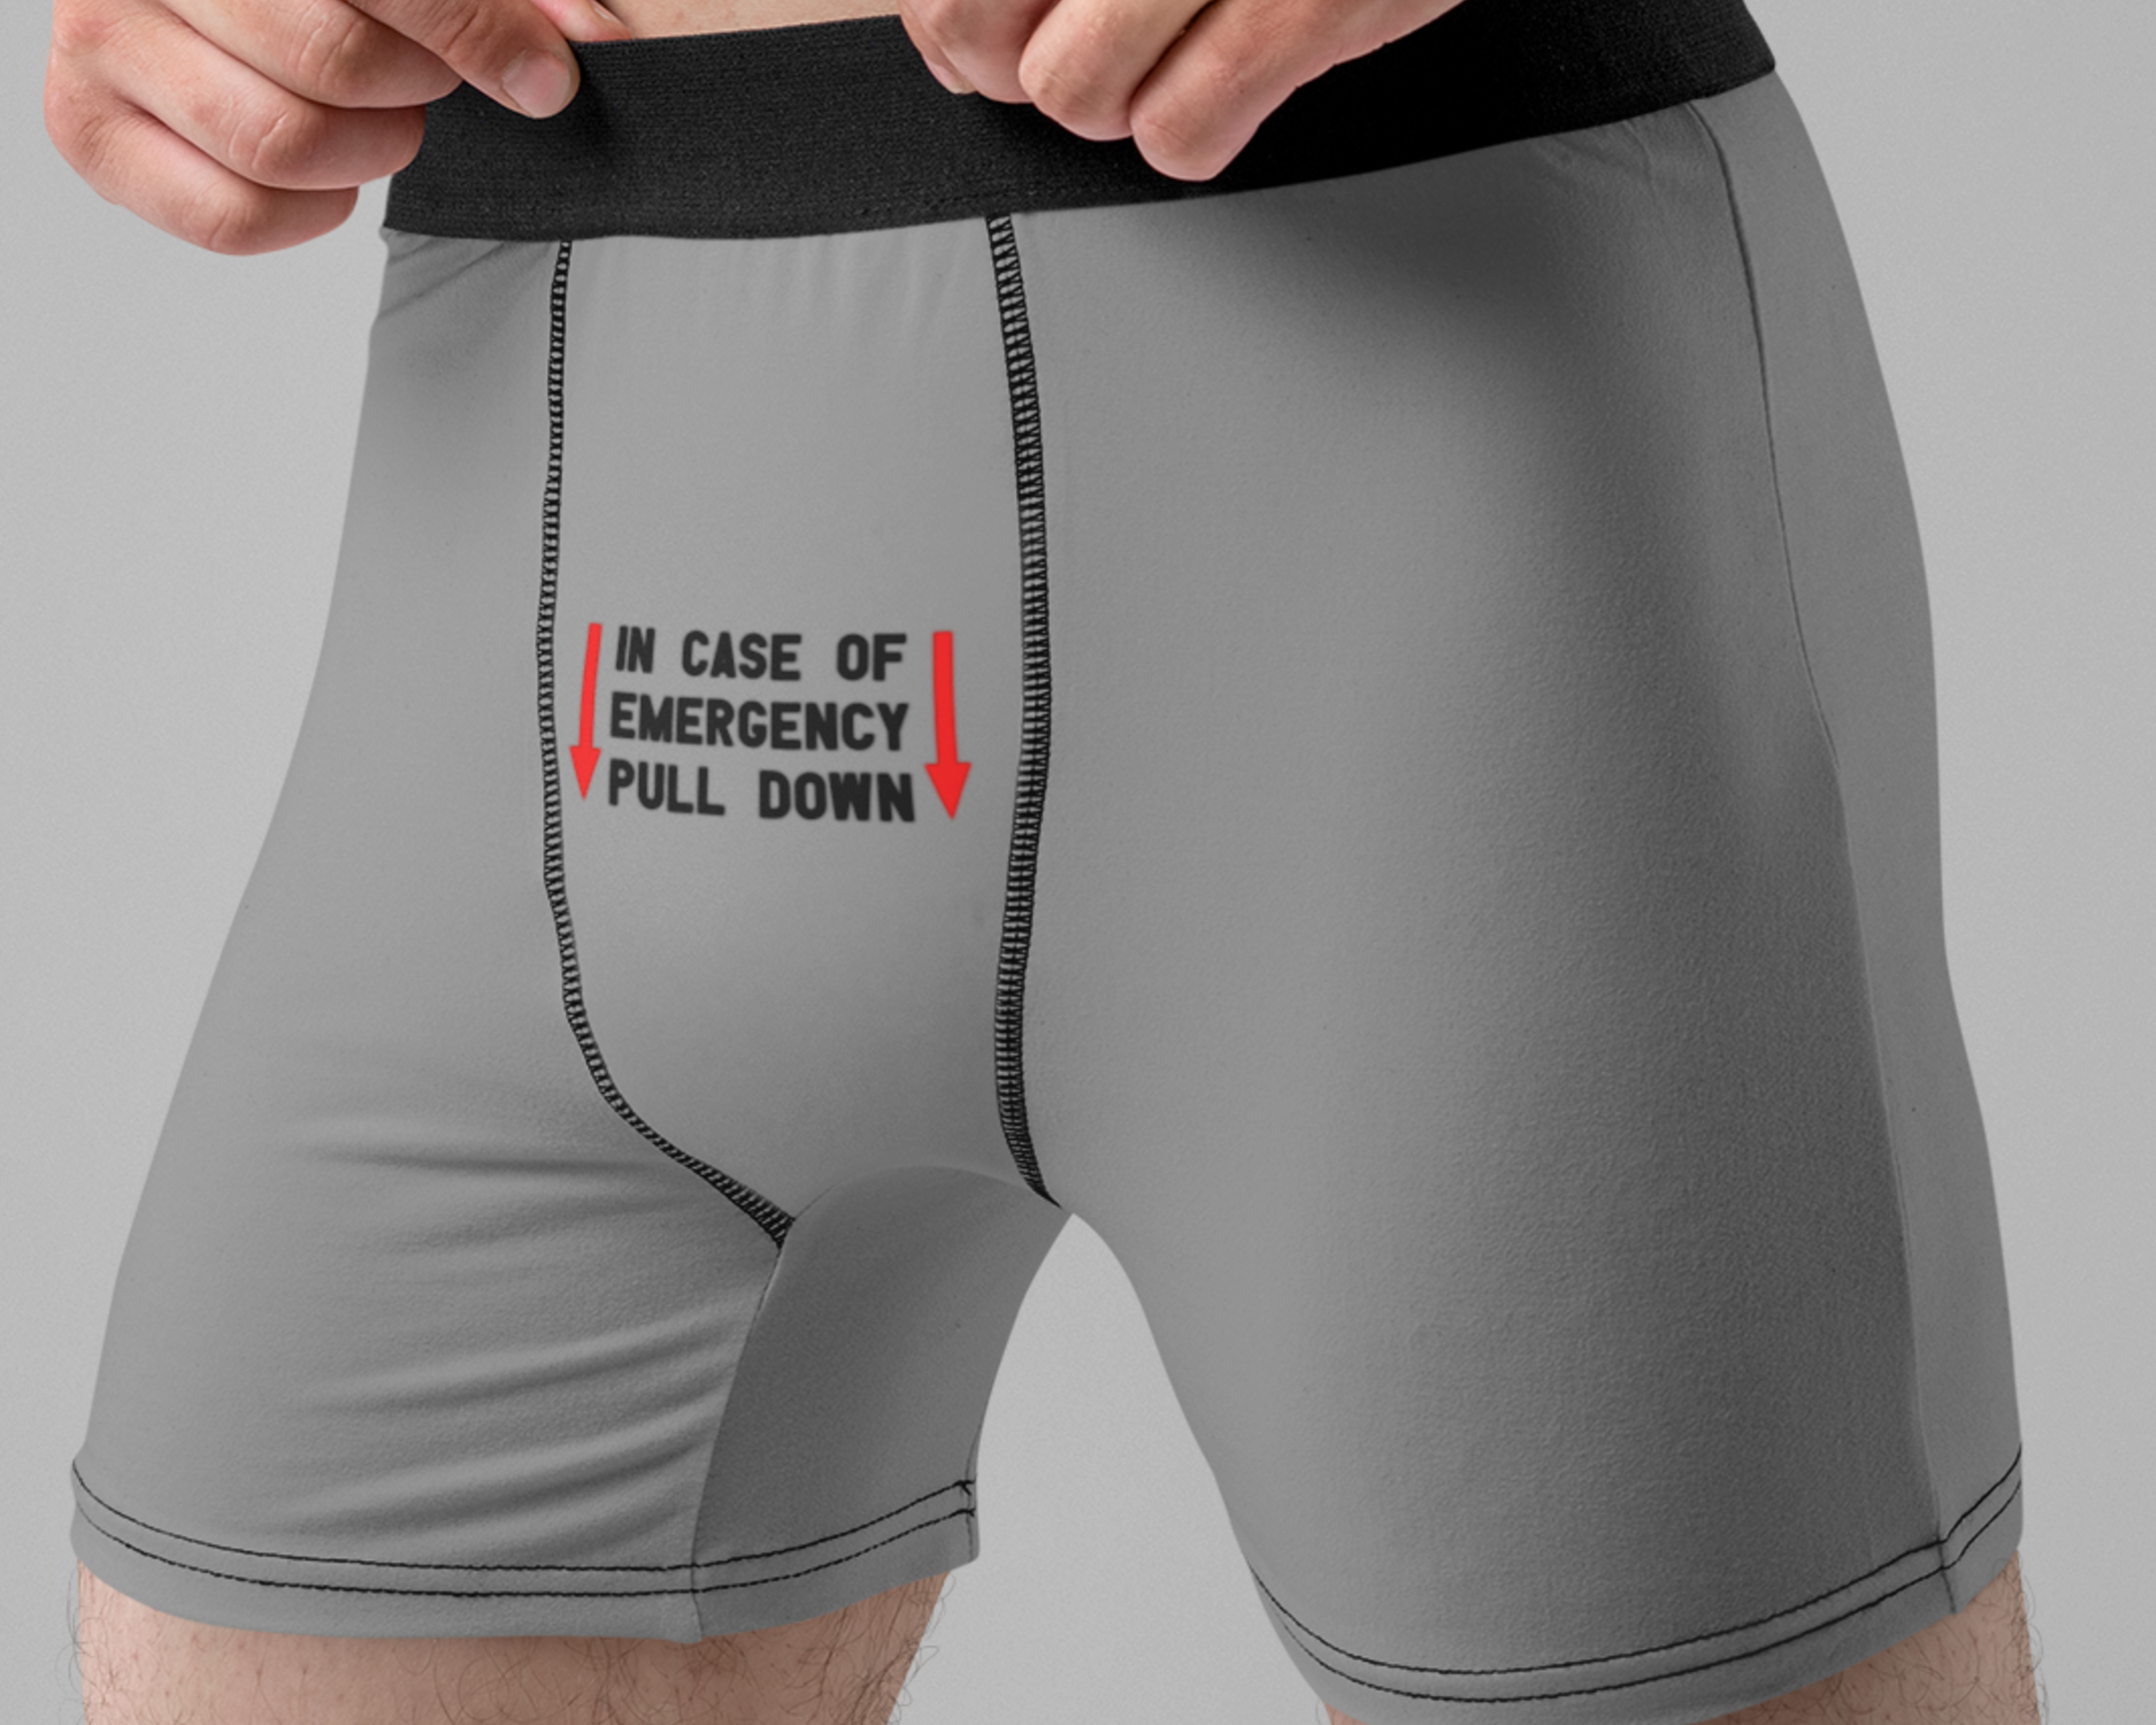 NSFW SVG - Warning Choking Hazard SVG - Men's Underwear Svg